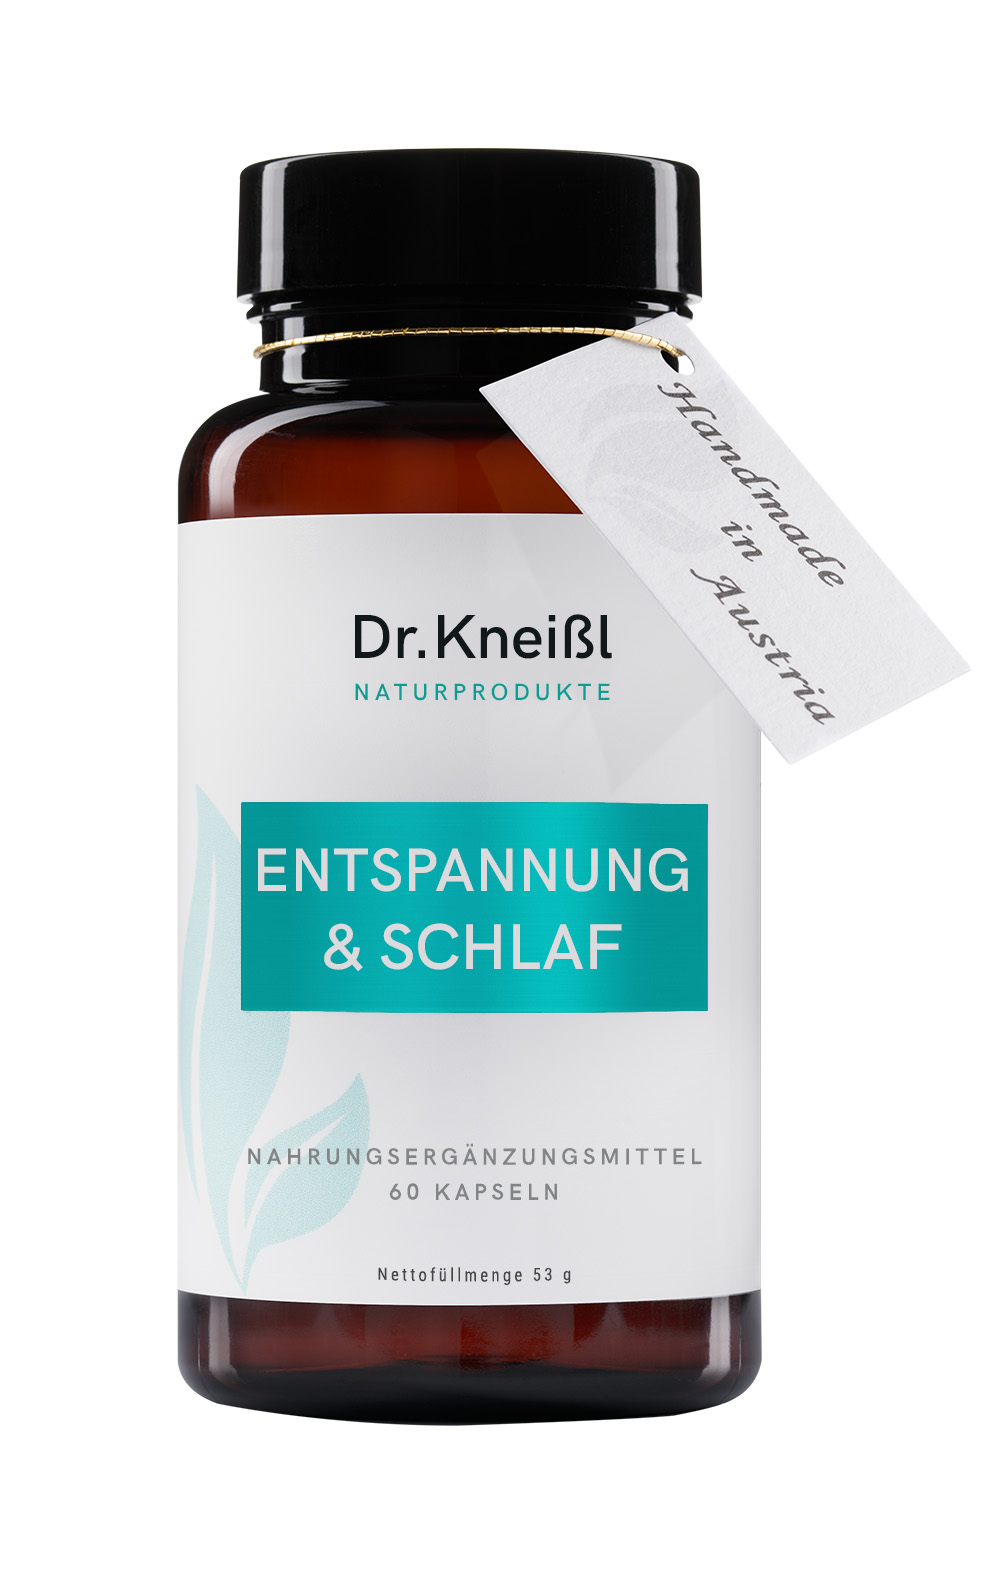 Dr. Kneißl Naturprodukt: Entspannung & Schlaf